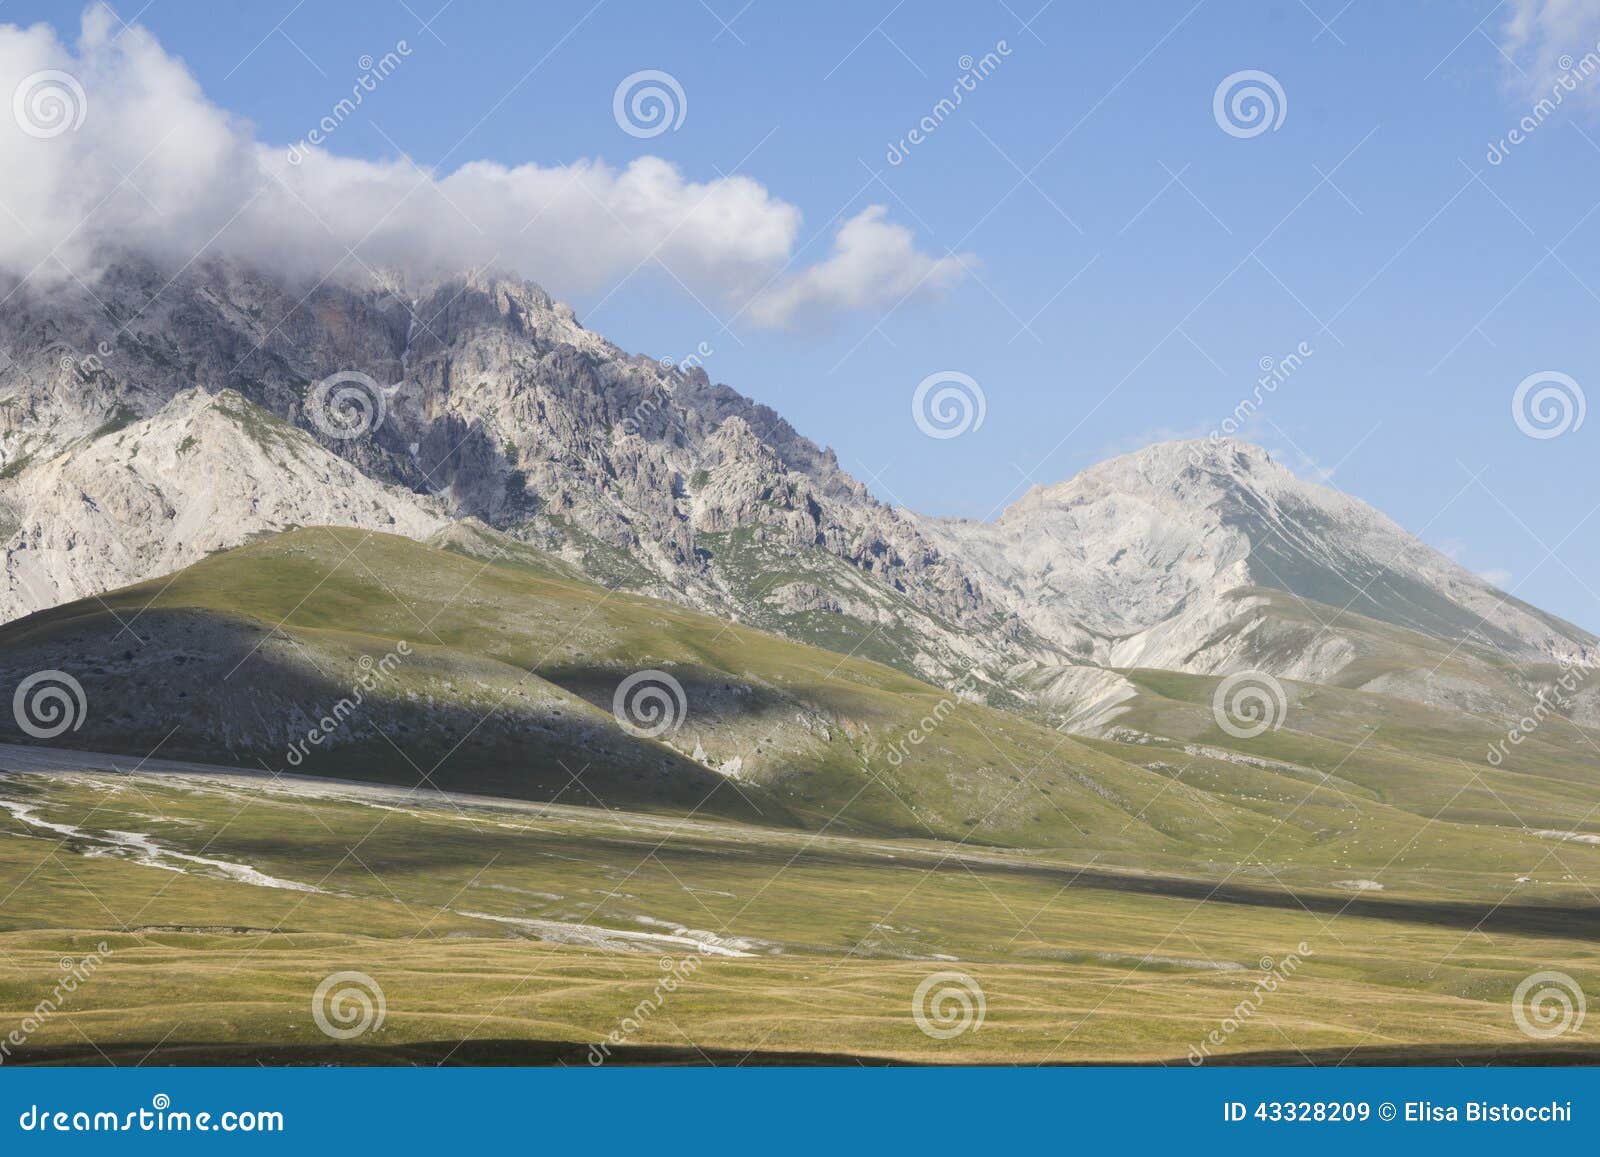 national park of gran sasso and monti della laga